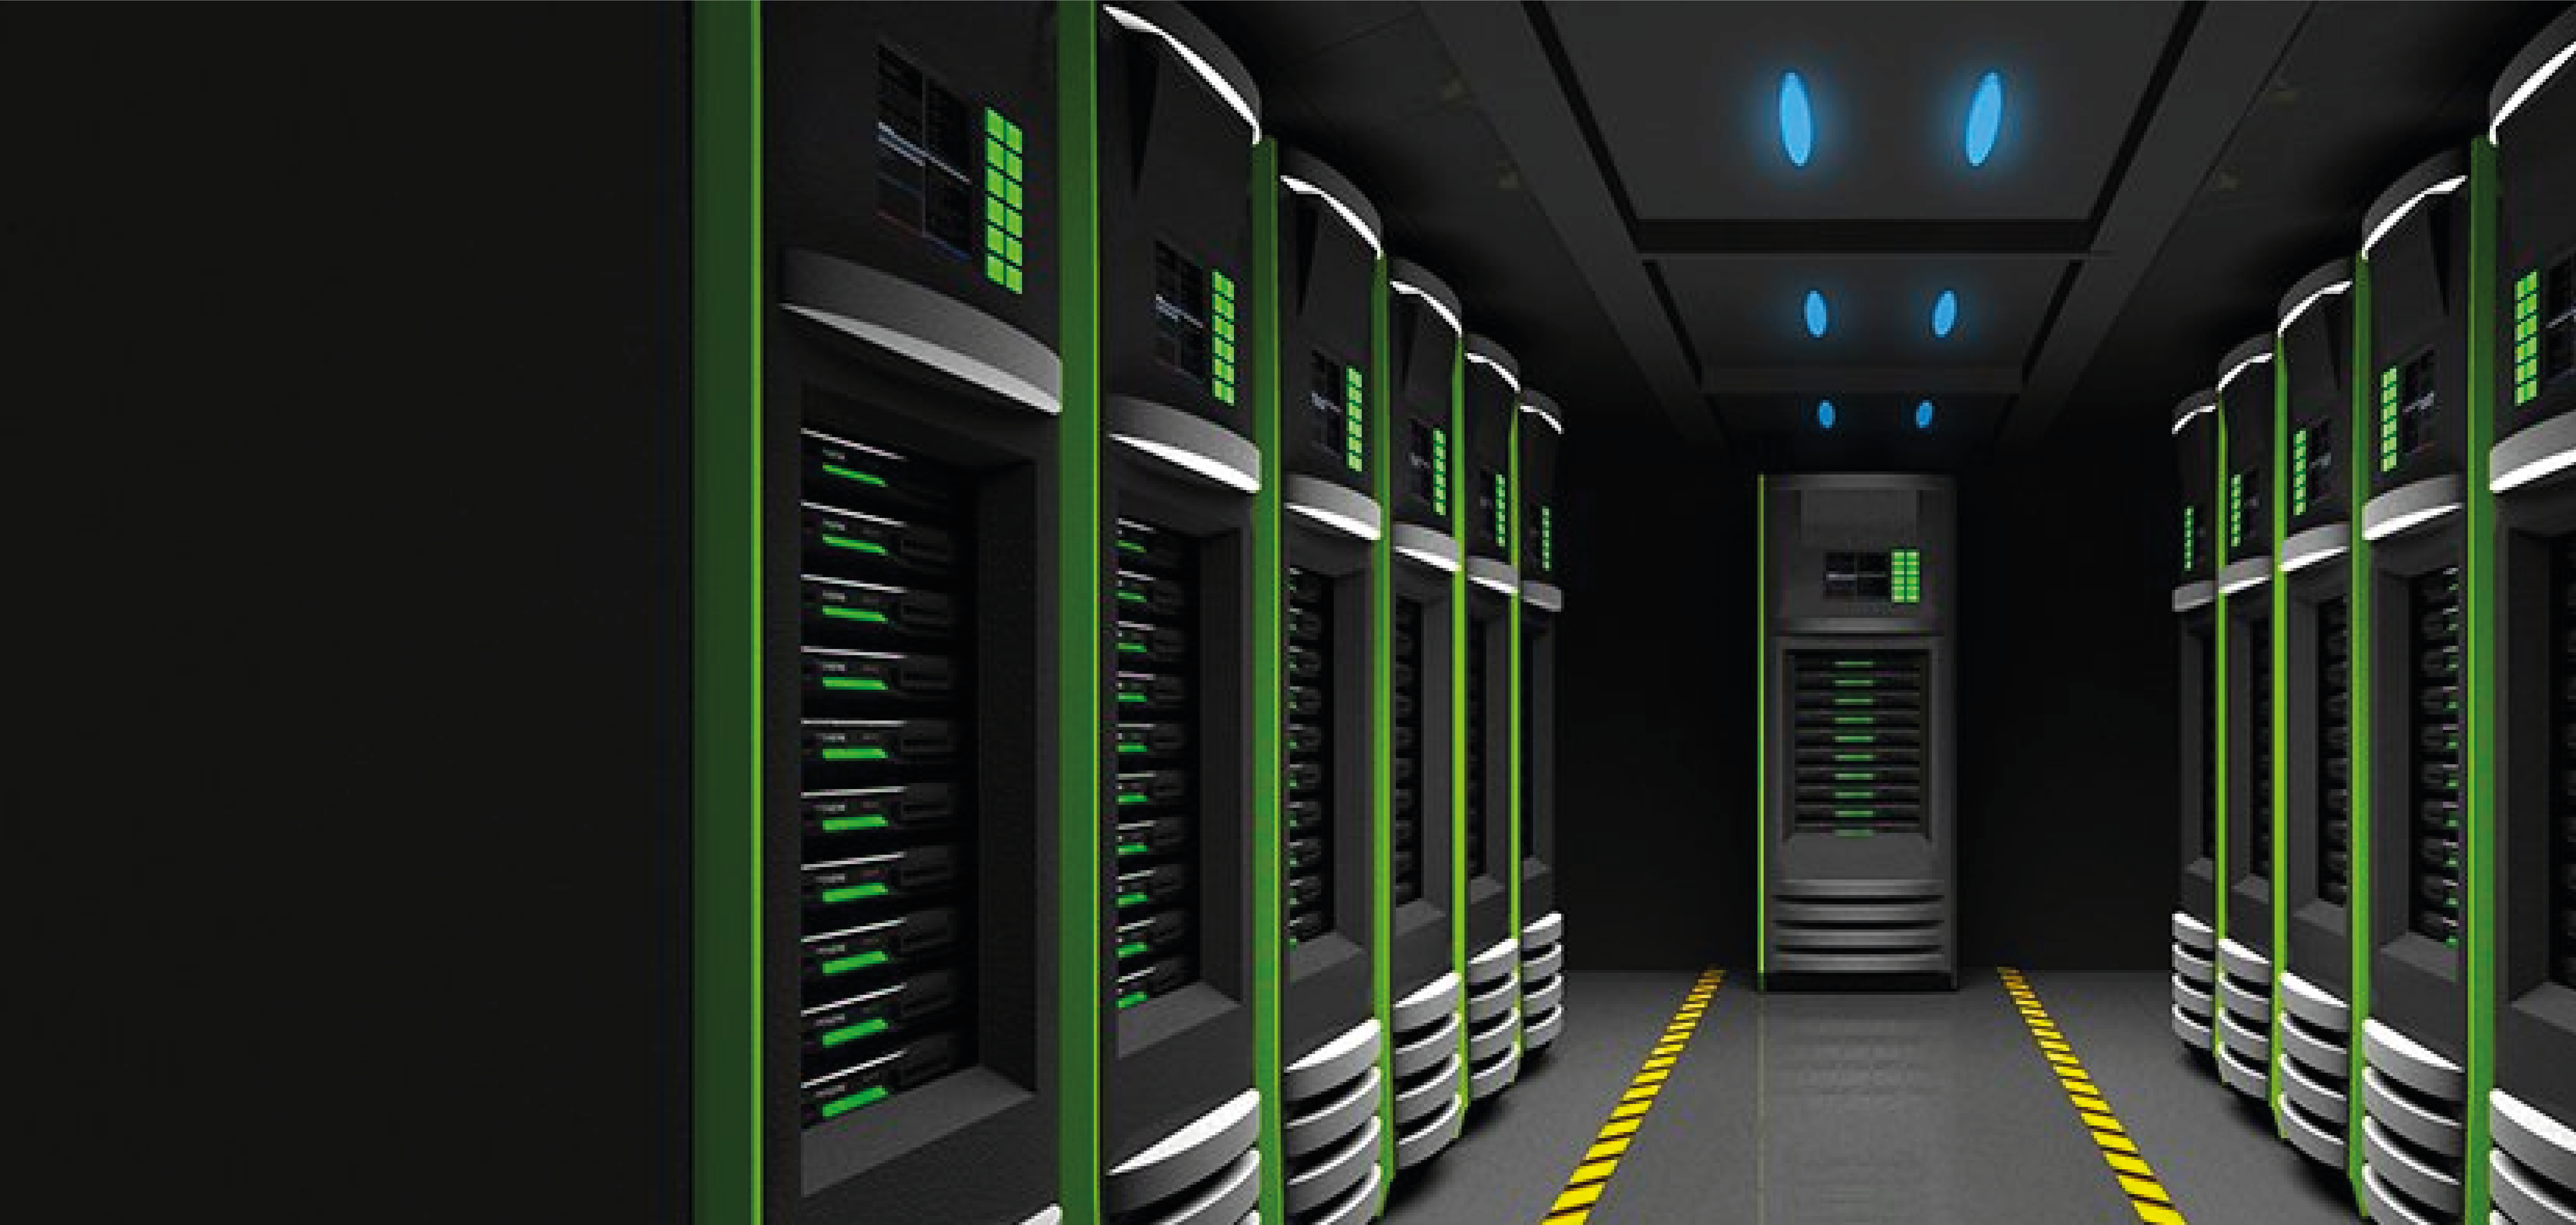 Хостинг. Надежный хостинг. Cisco фото 4к. Data Center infrastructure Management уроки 19.1. Server boxing